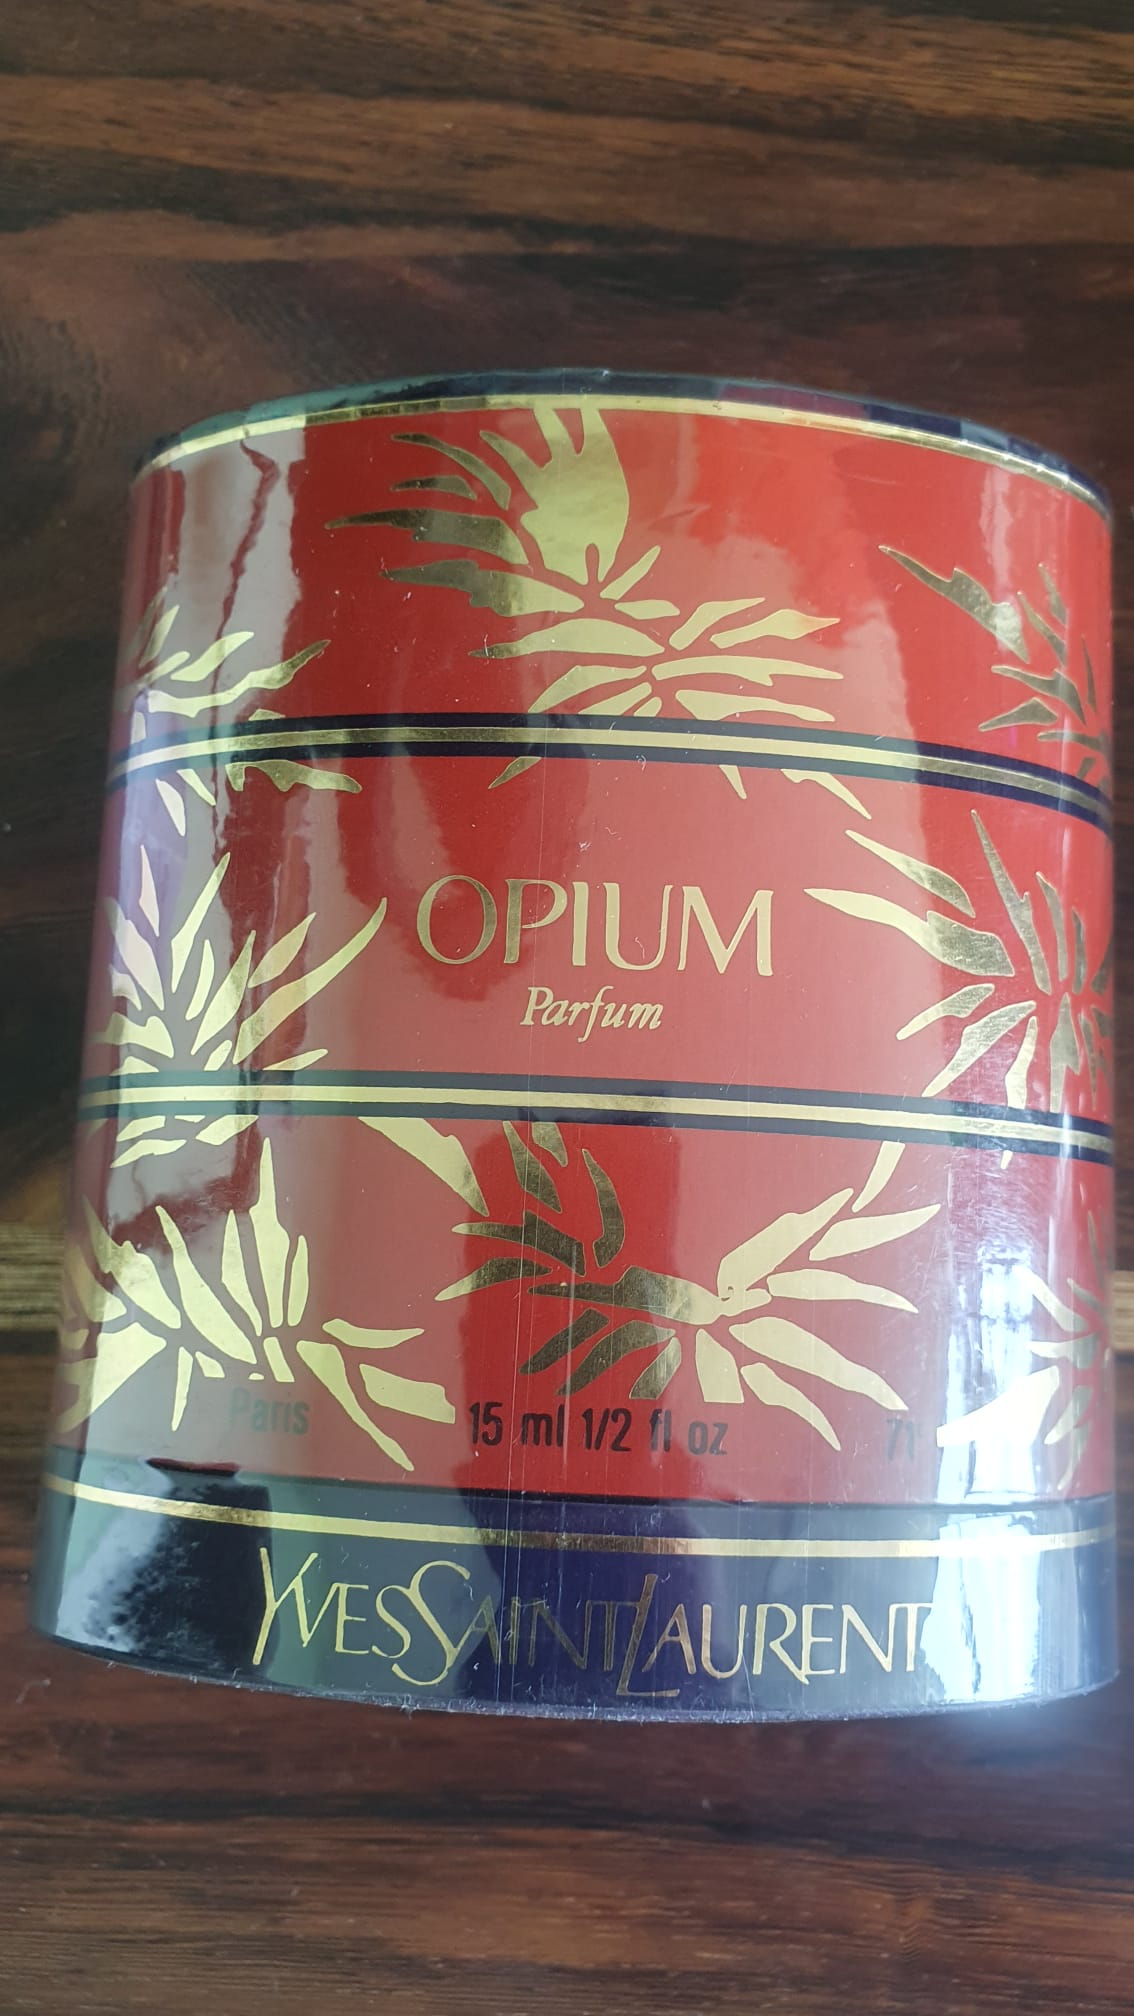 Opium Parfum 1977 – Yves Saint Laurent – 15 ml with original box